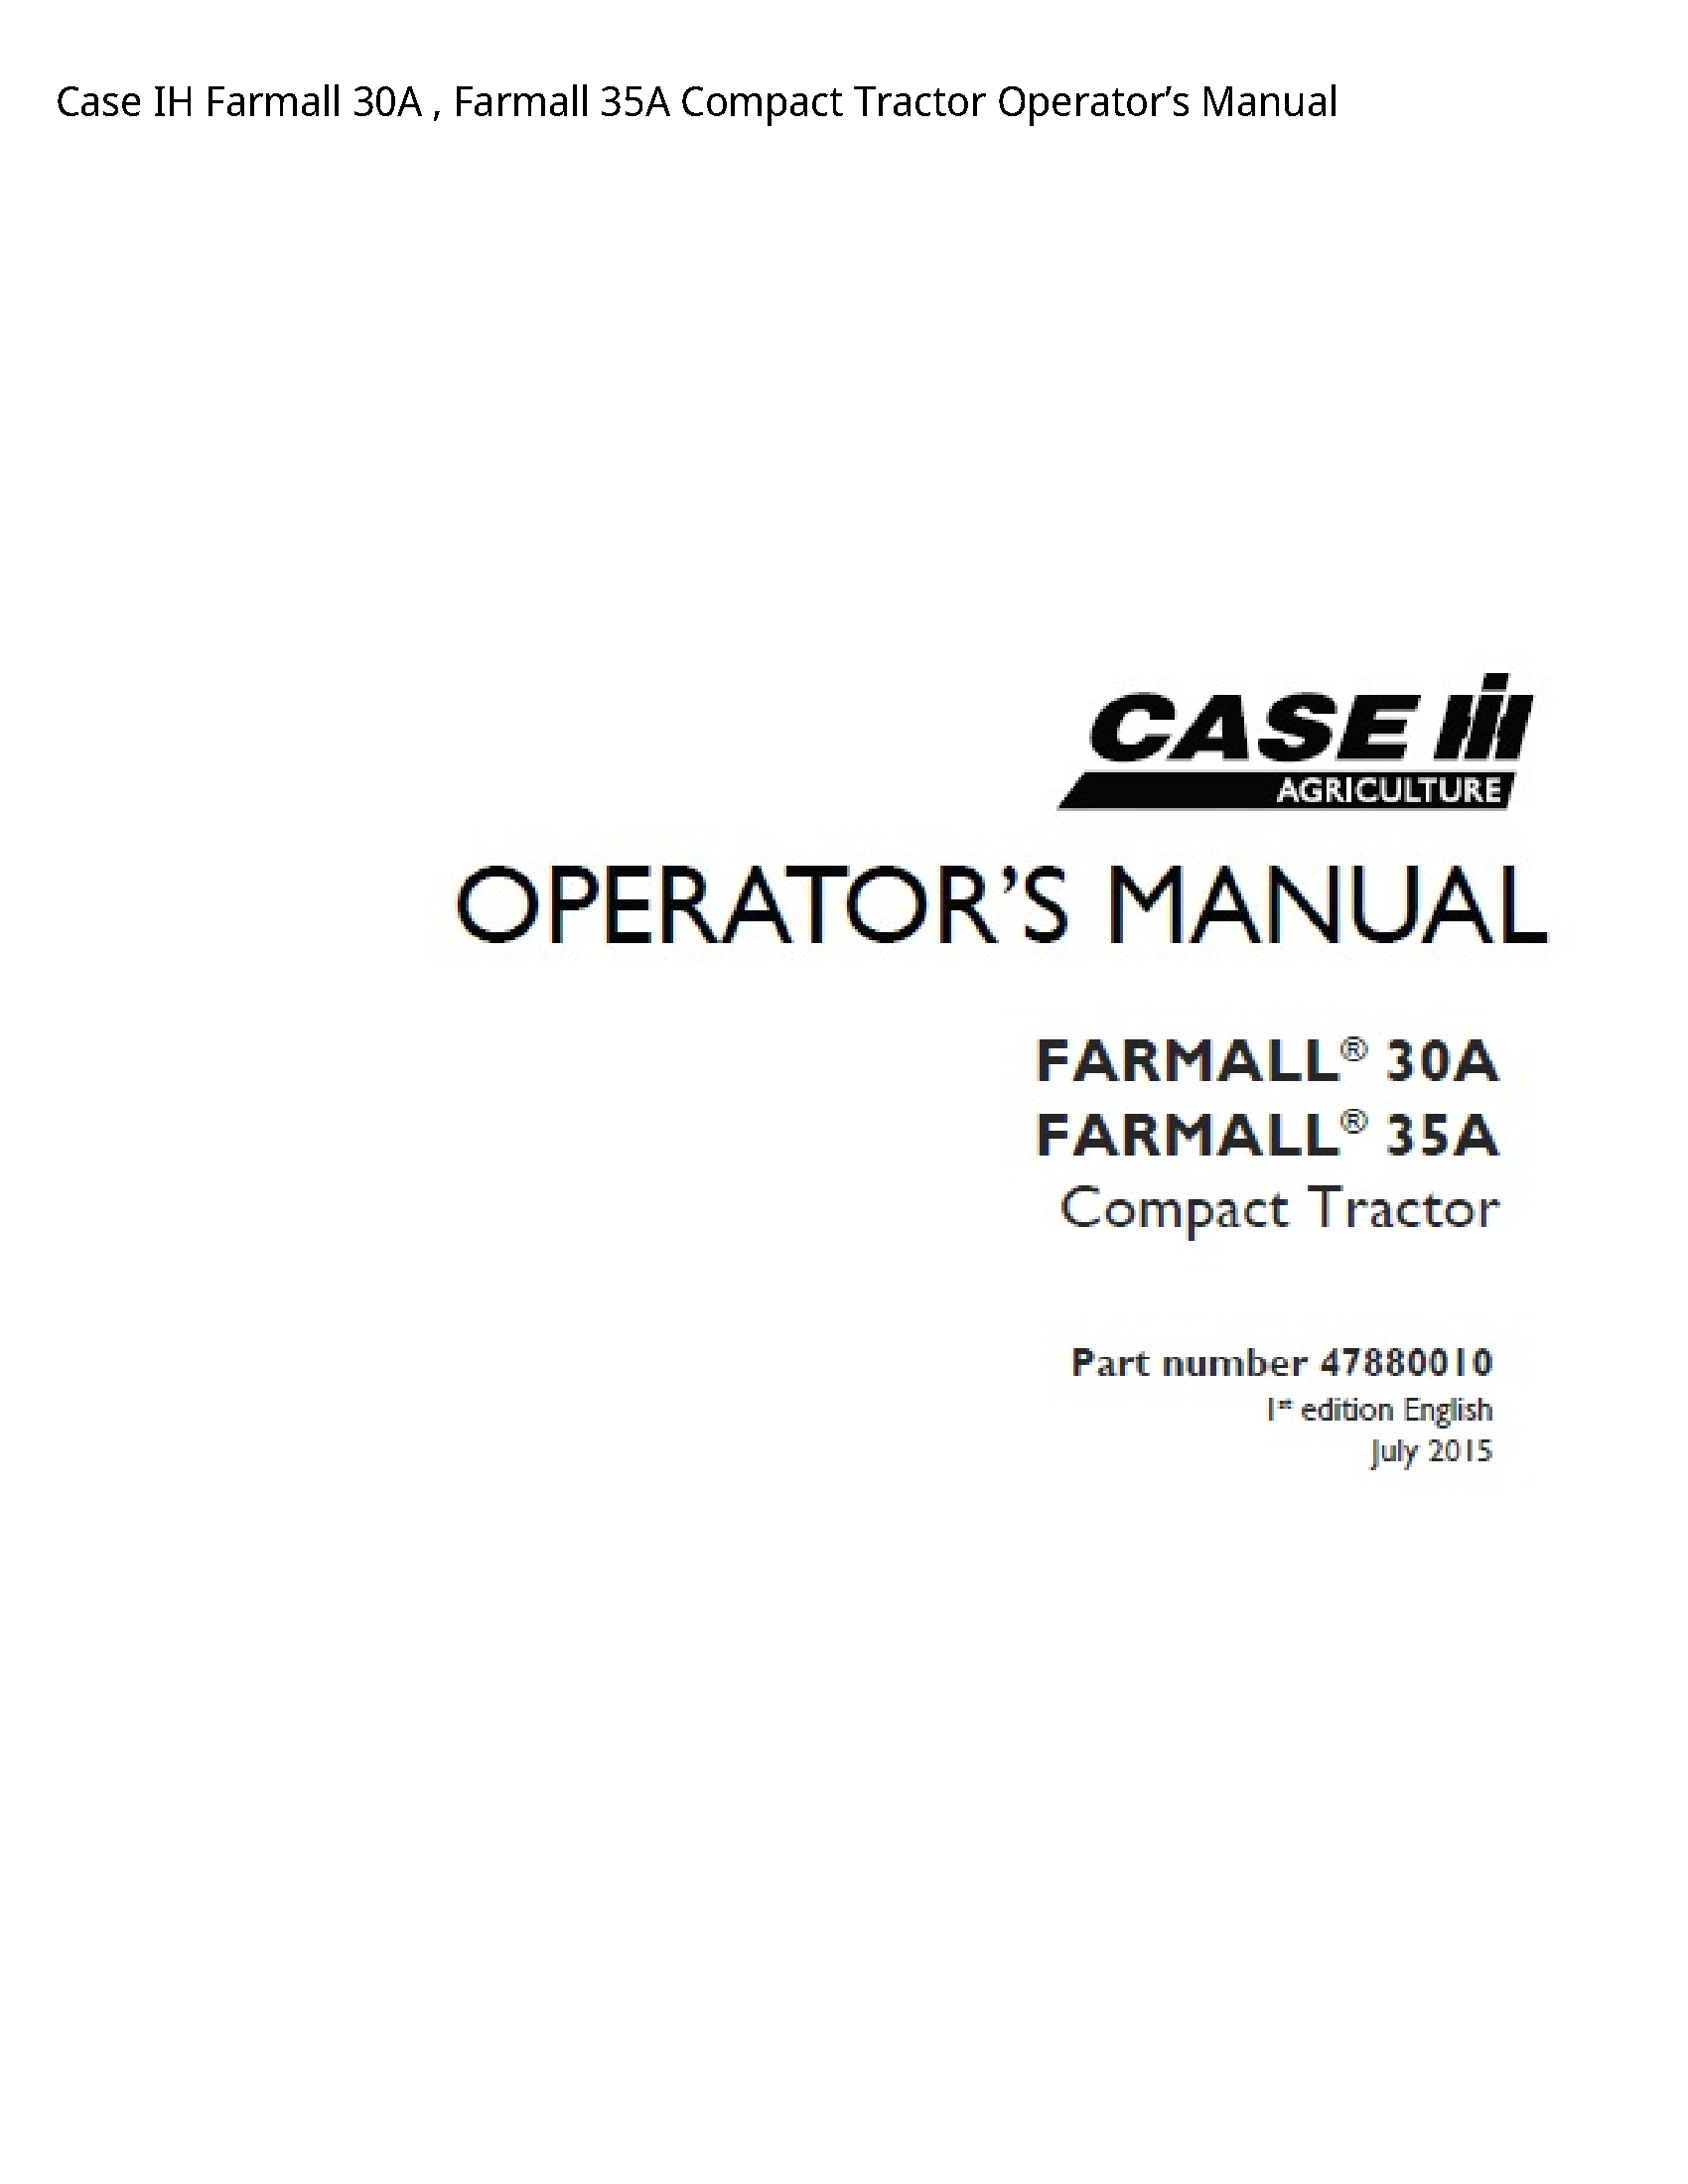 Case/Case IH 30A IH Farmall Farmall Compact Tractor Operator’s manual